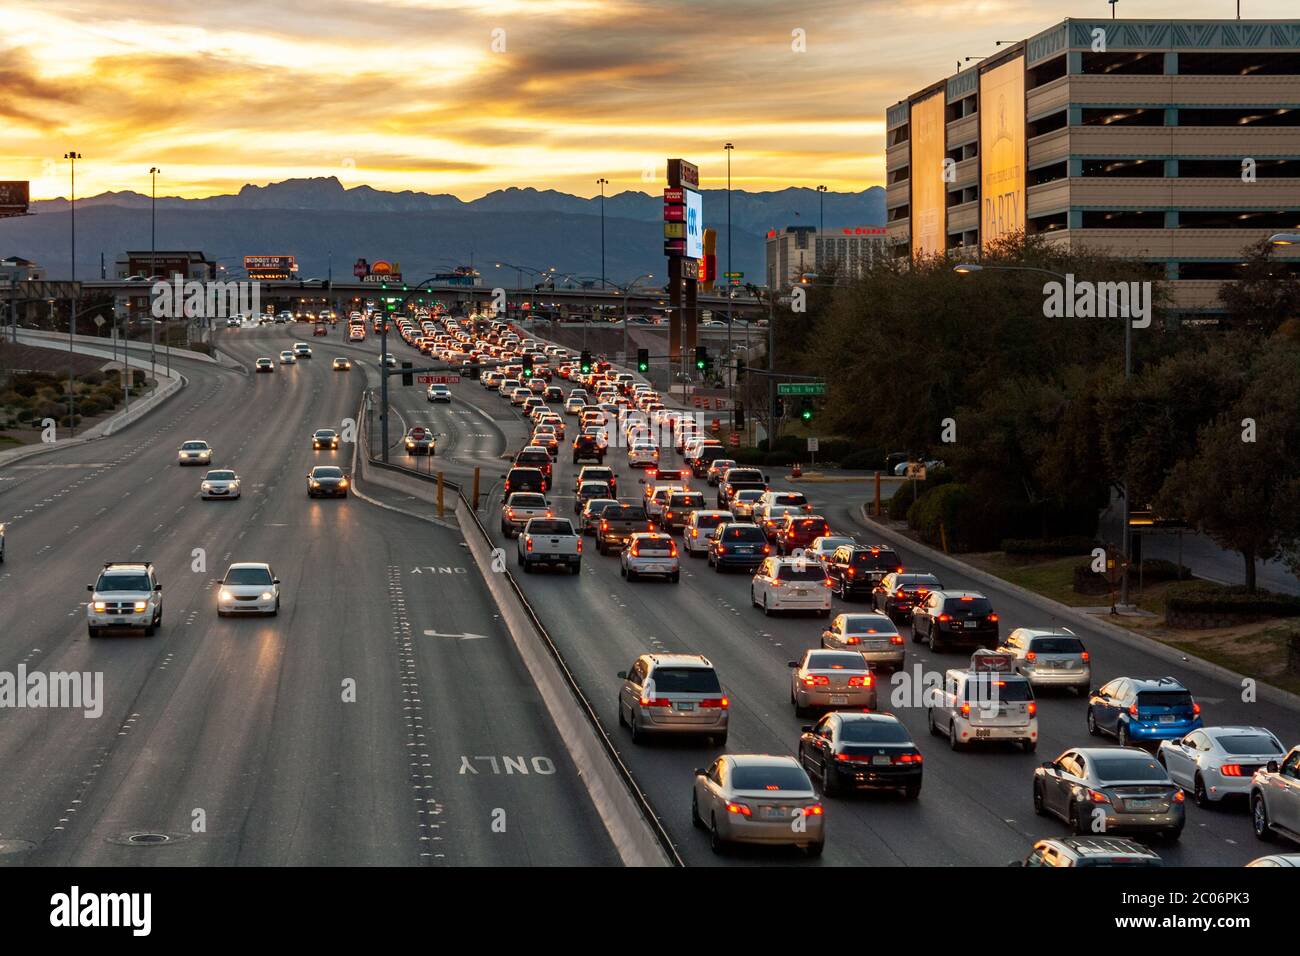 Las Vegas, Nevada / USA - 27. Februar 2019: Starker Verkehr am späten Nachmittag auf der Tropicana Ave. Westlich des Las Vegas Strip. Stockfoto